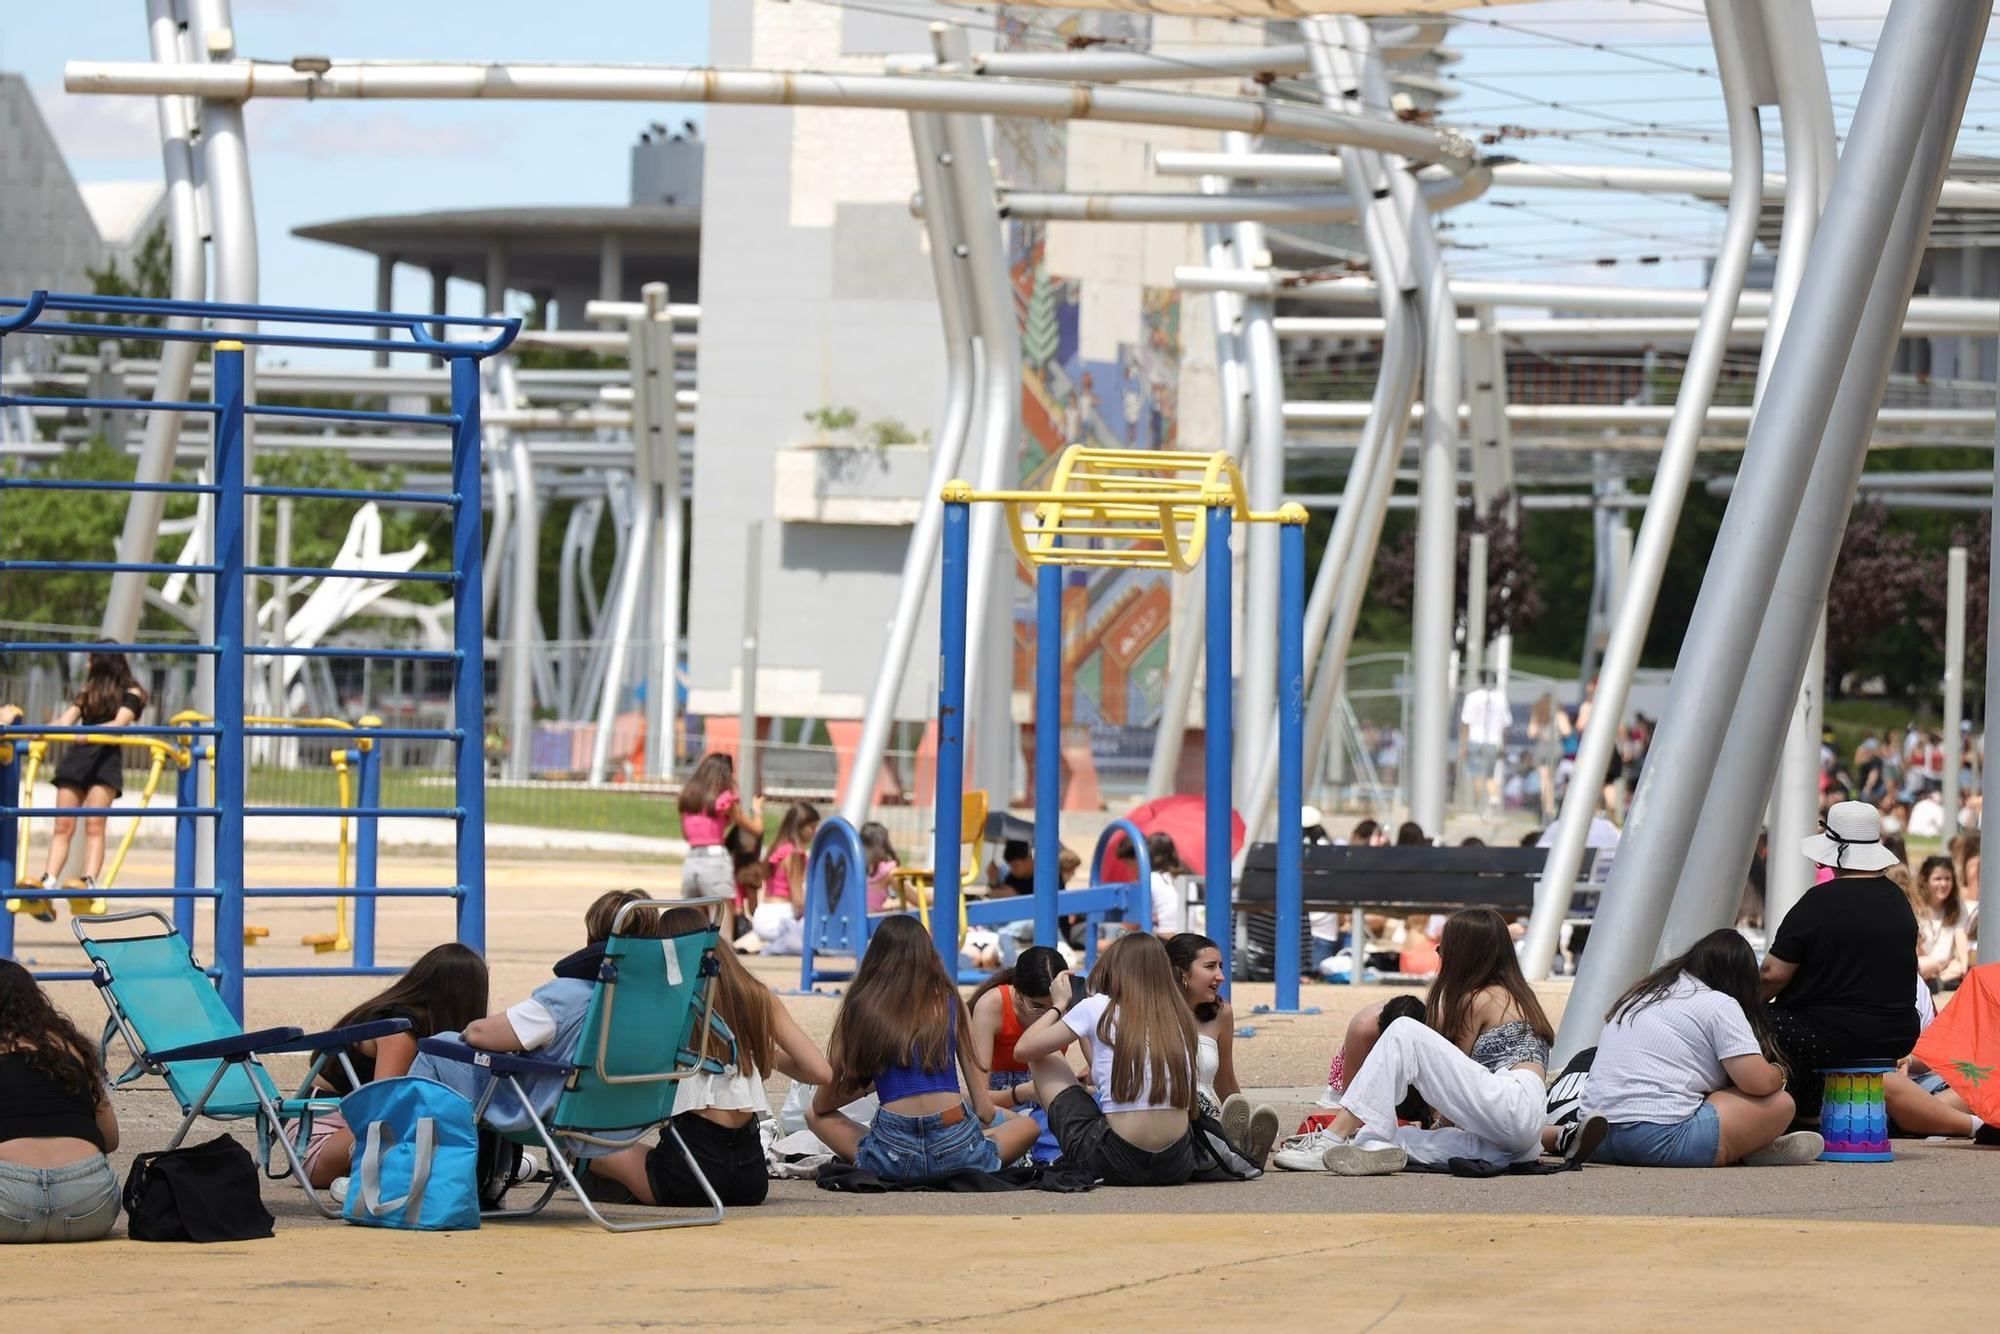 En imágenes | Los fans de Operación Triunfo invaden la Expo horas antes del concierto